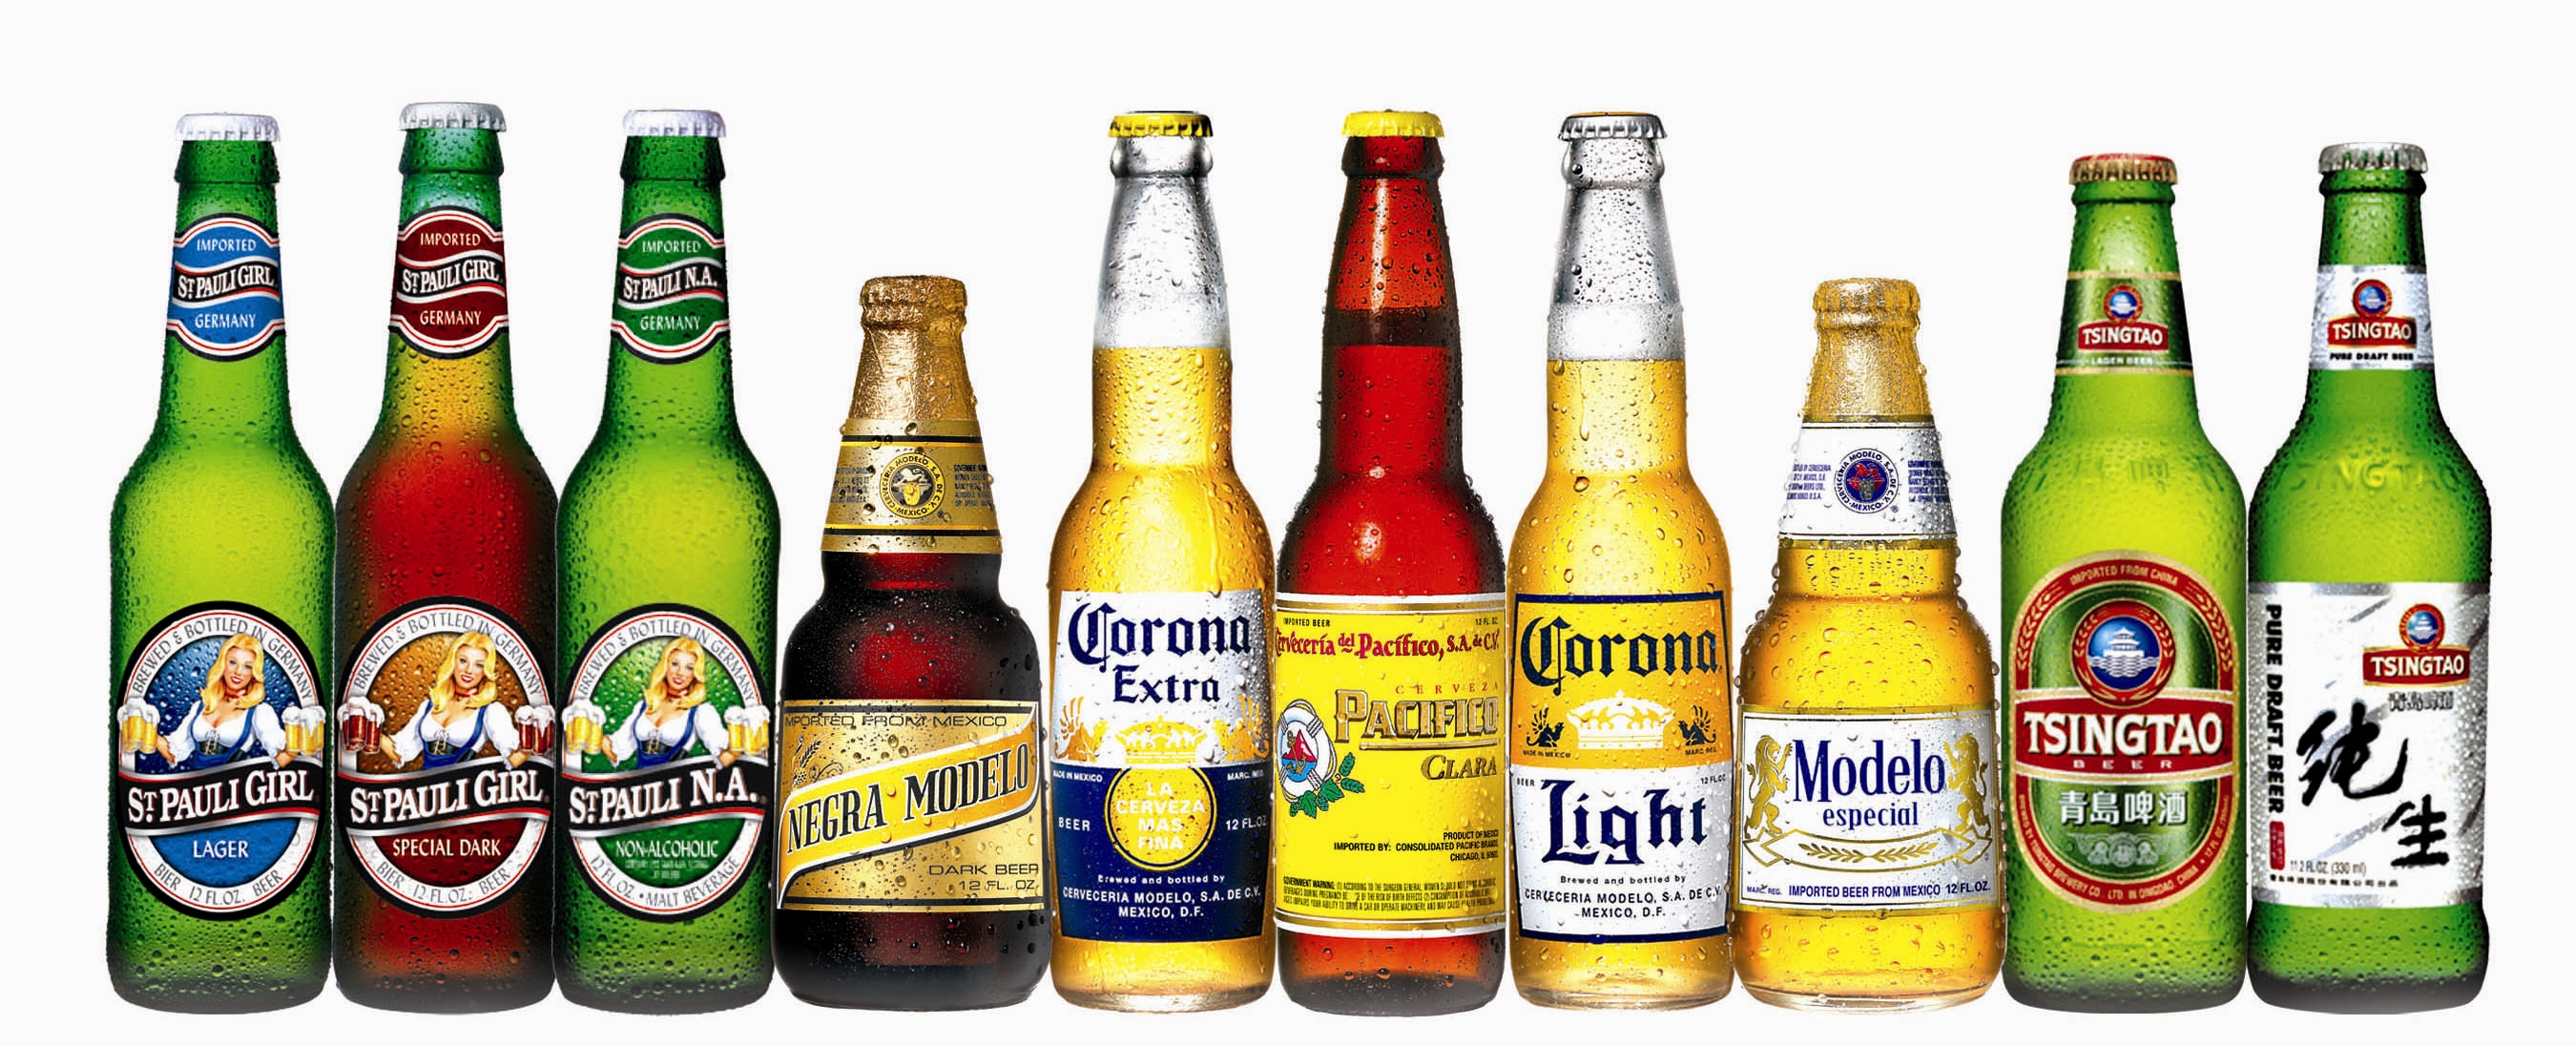 crown-beer-portfolio.jpg